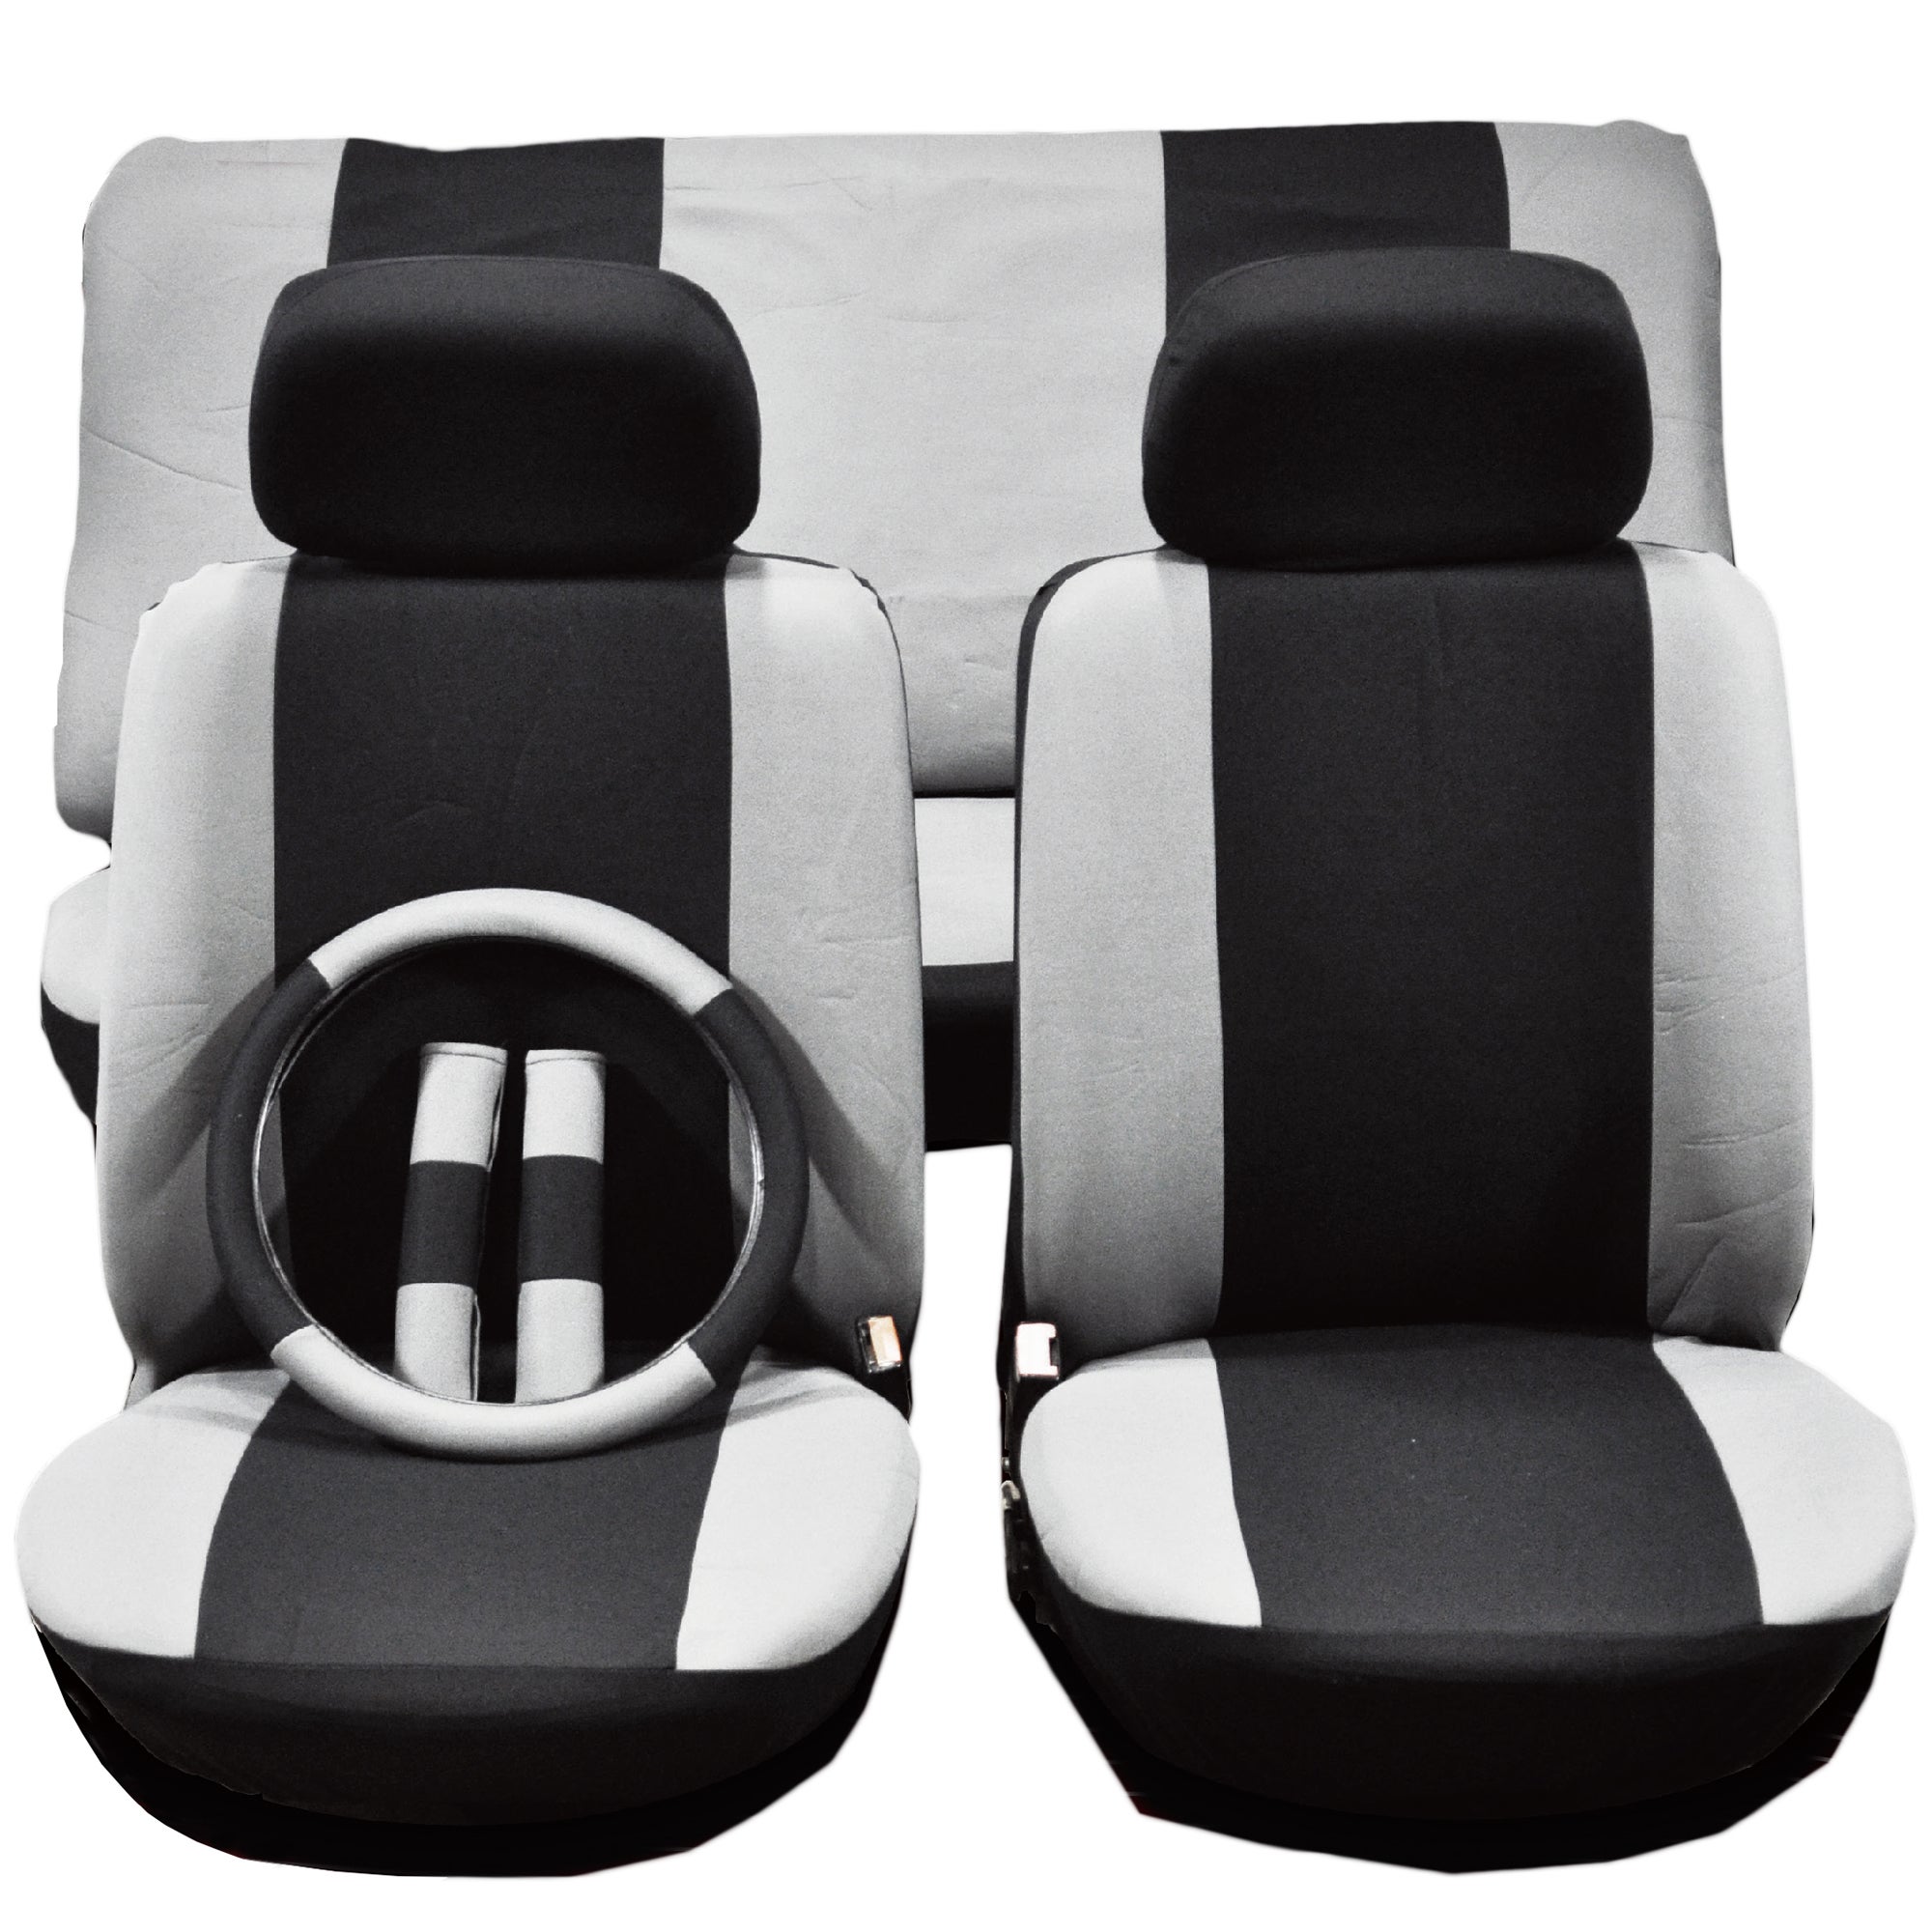 Car Seat Cover Set Black/grey 9pc, Automotive